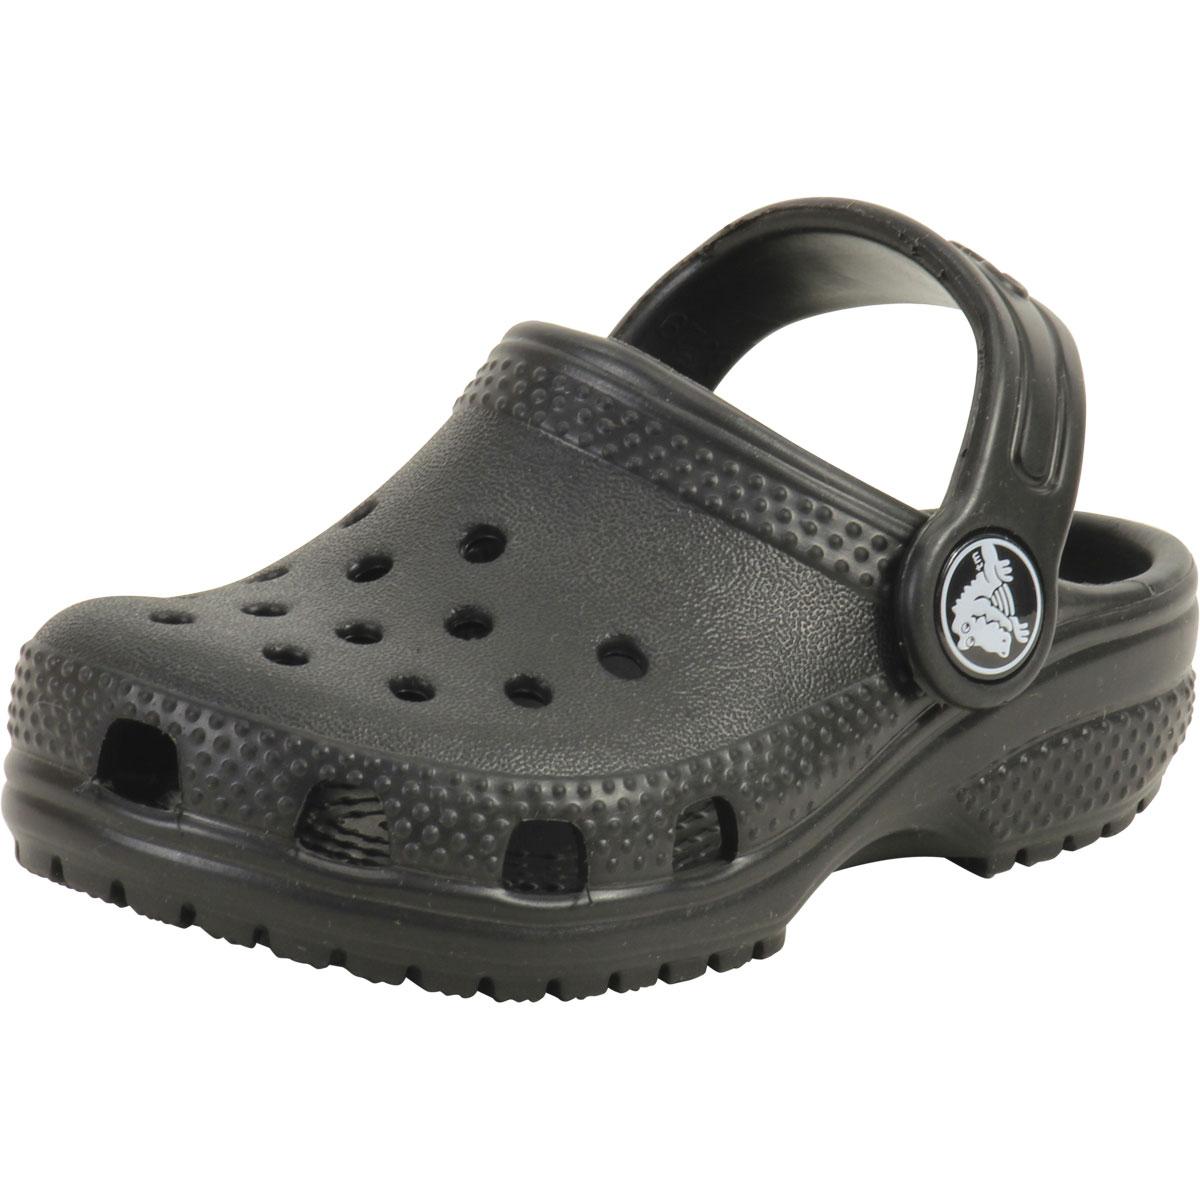 Crocs Toddler/Little Boy's Original Classic Clogs Sandals Shoes ...